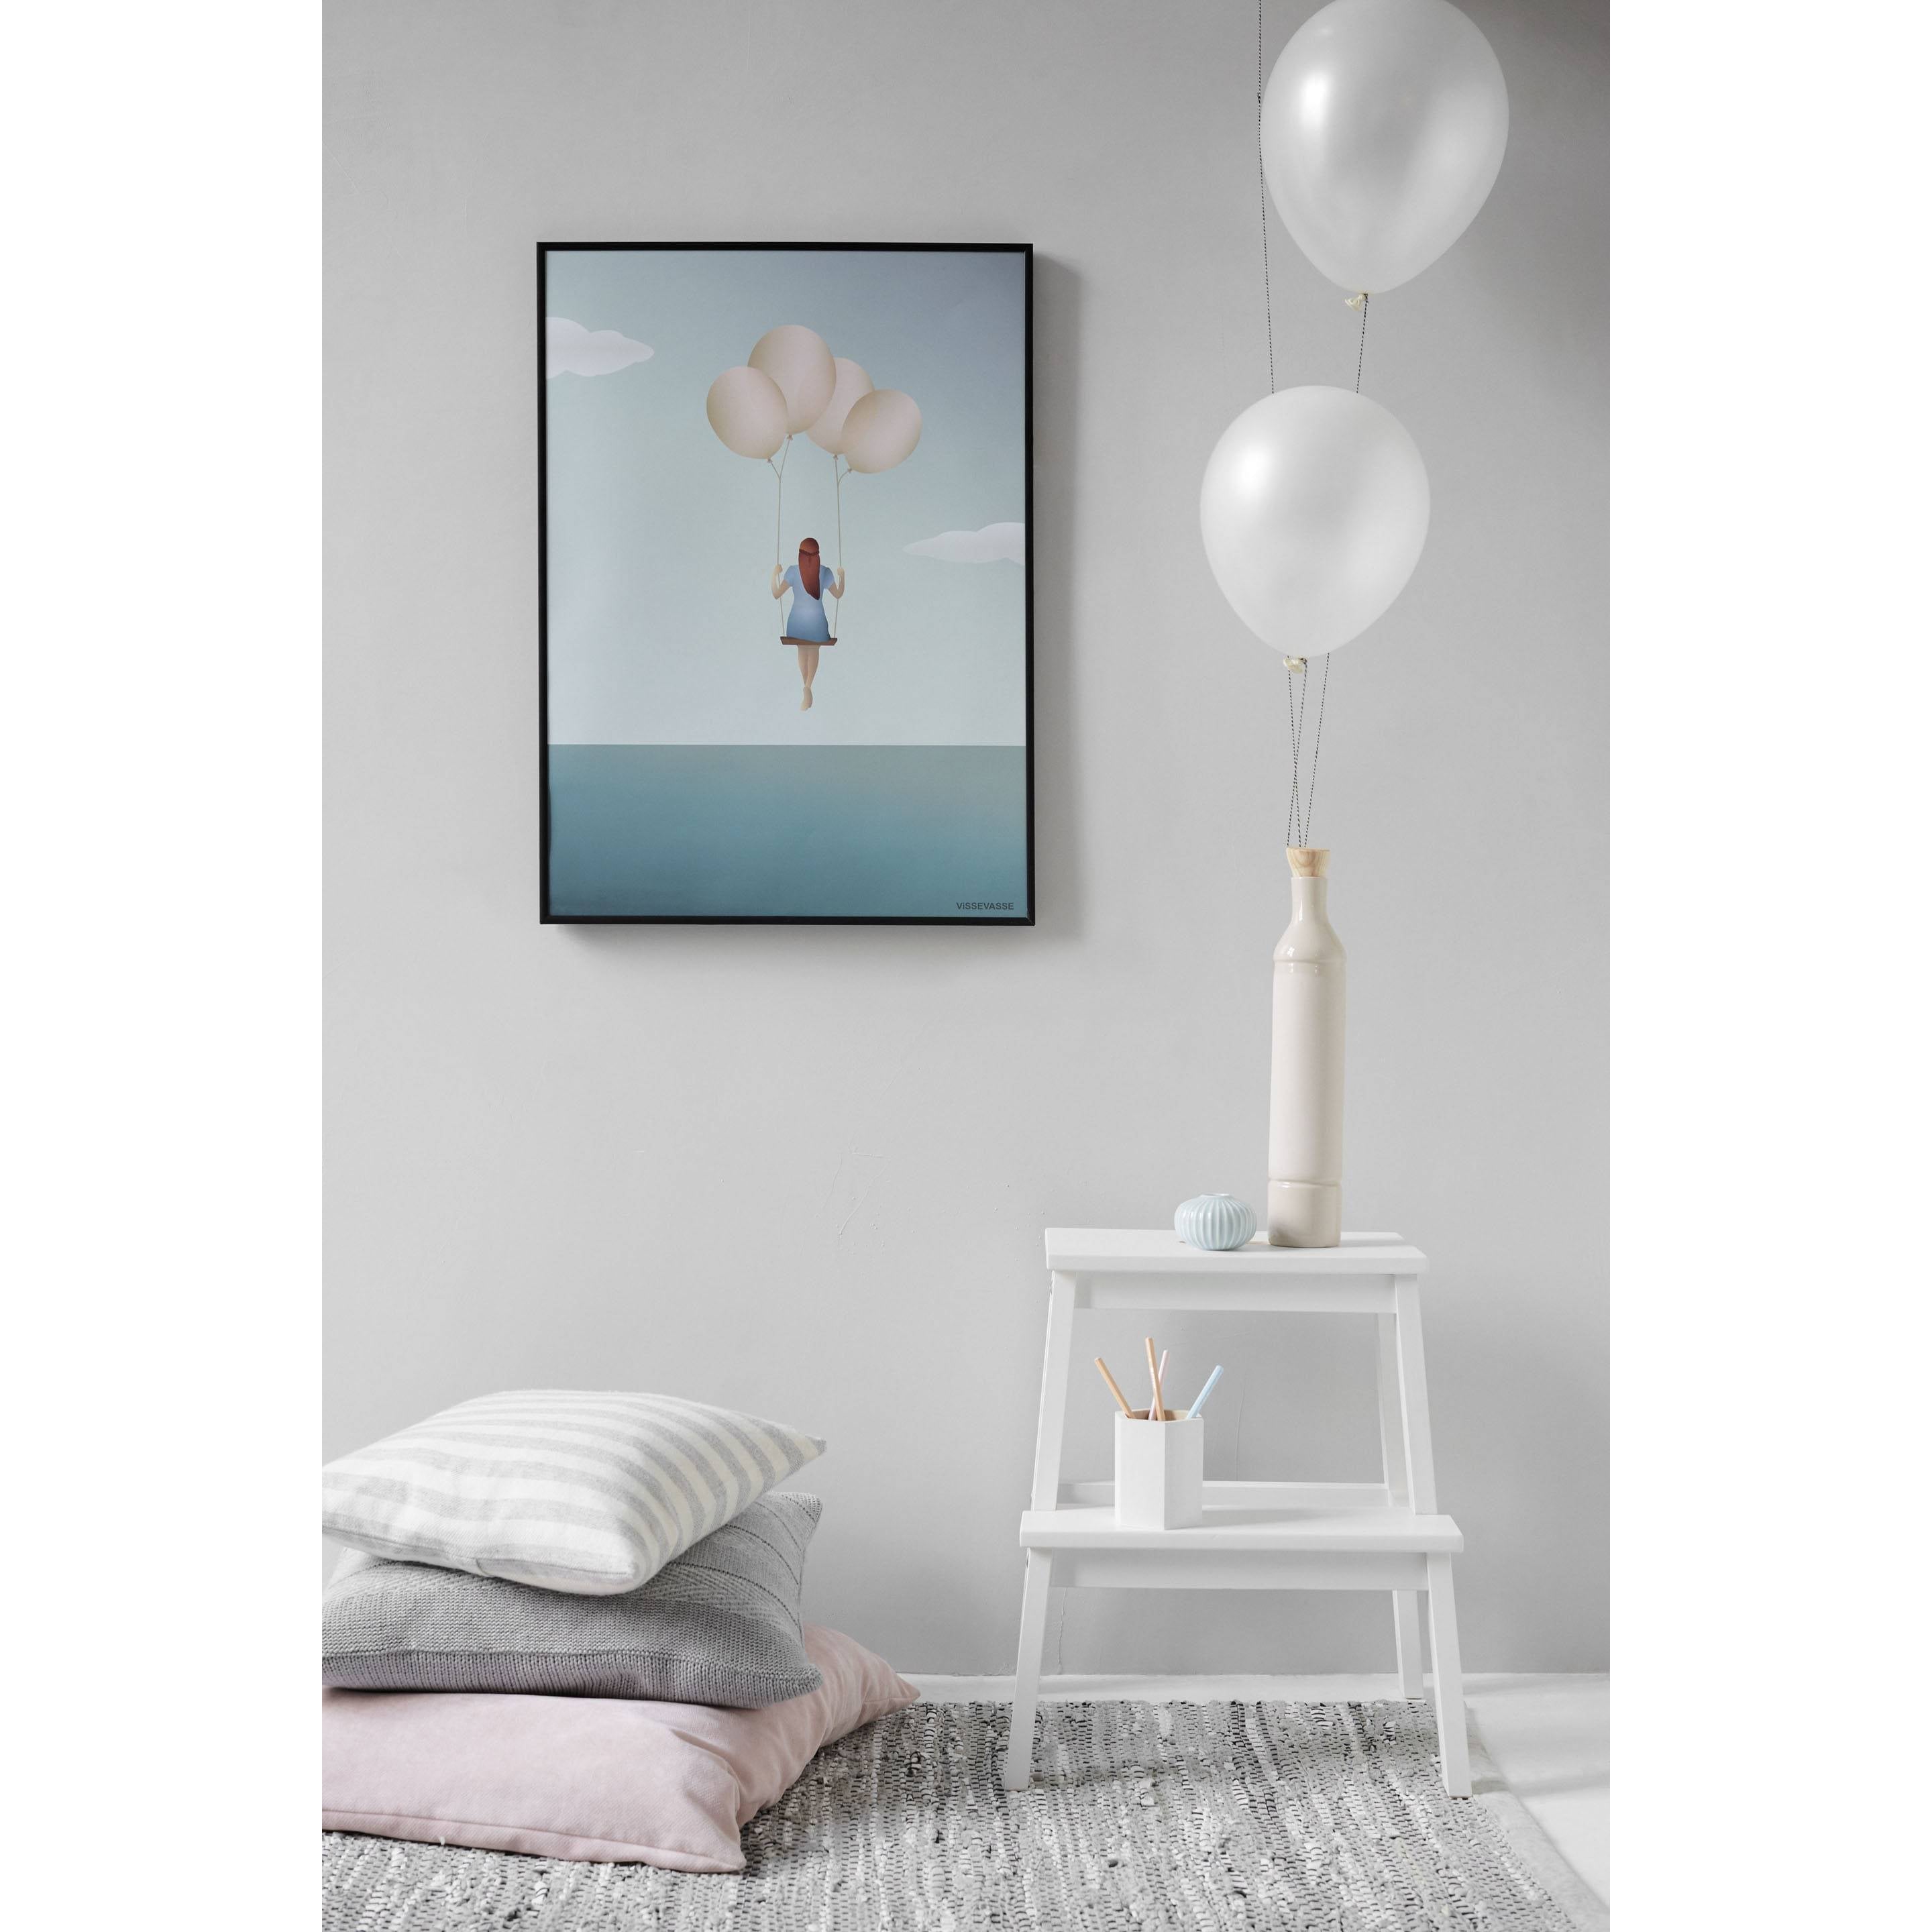 Vissevasse Balloon Dream Poster, 15x21 cm